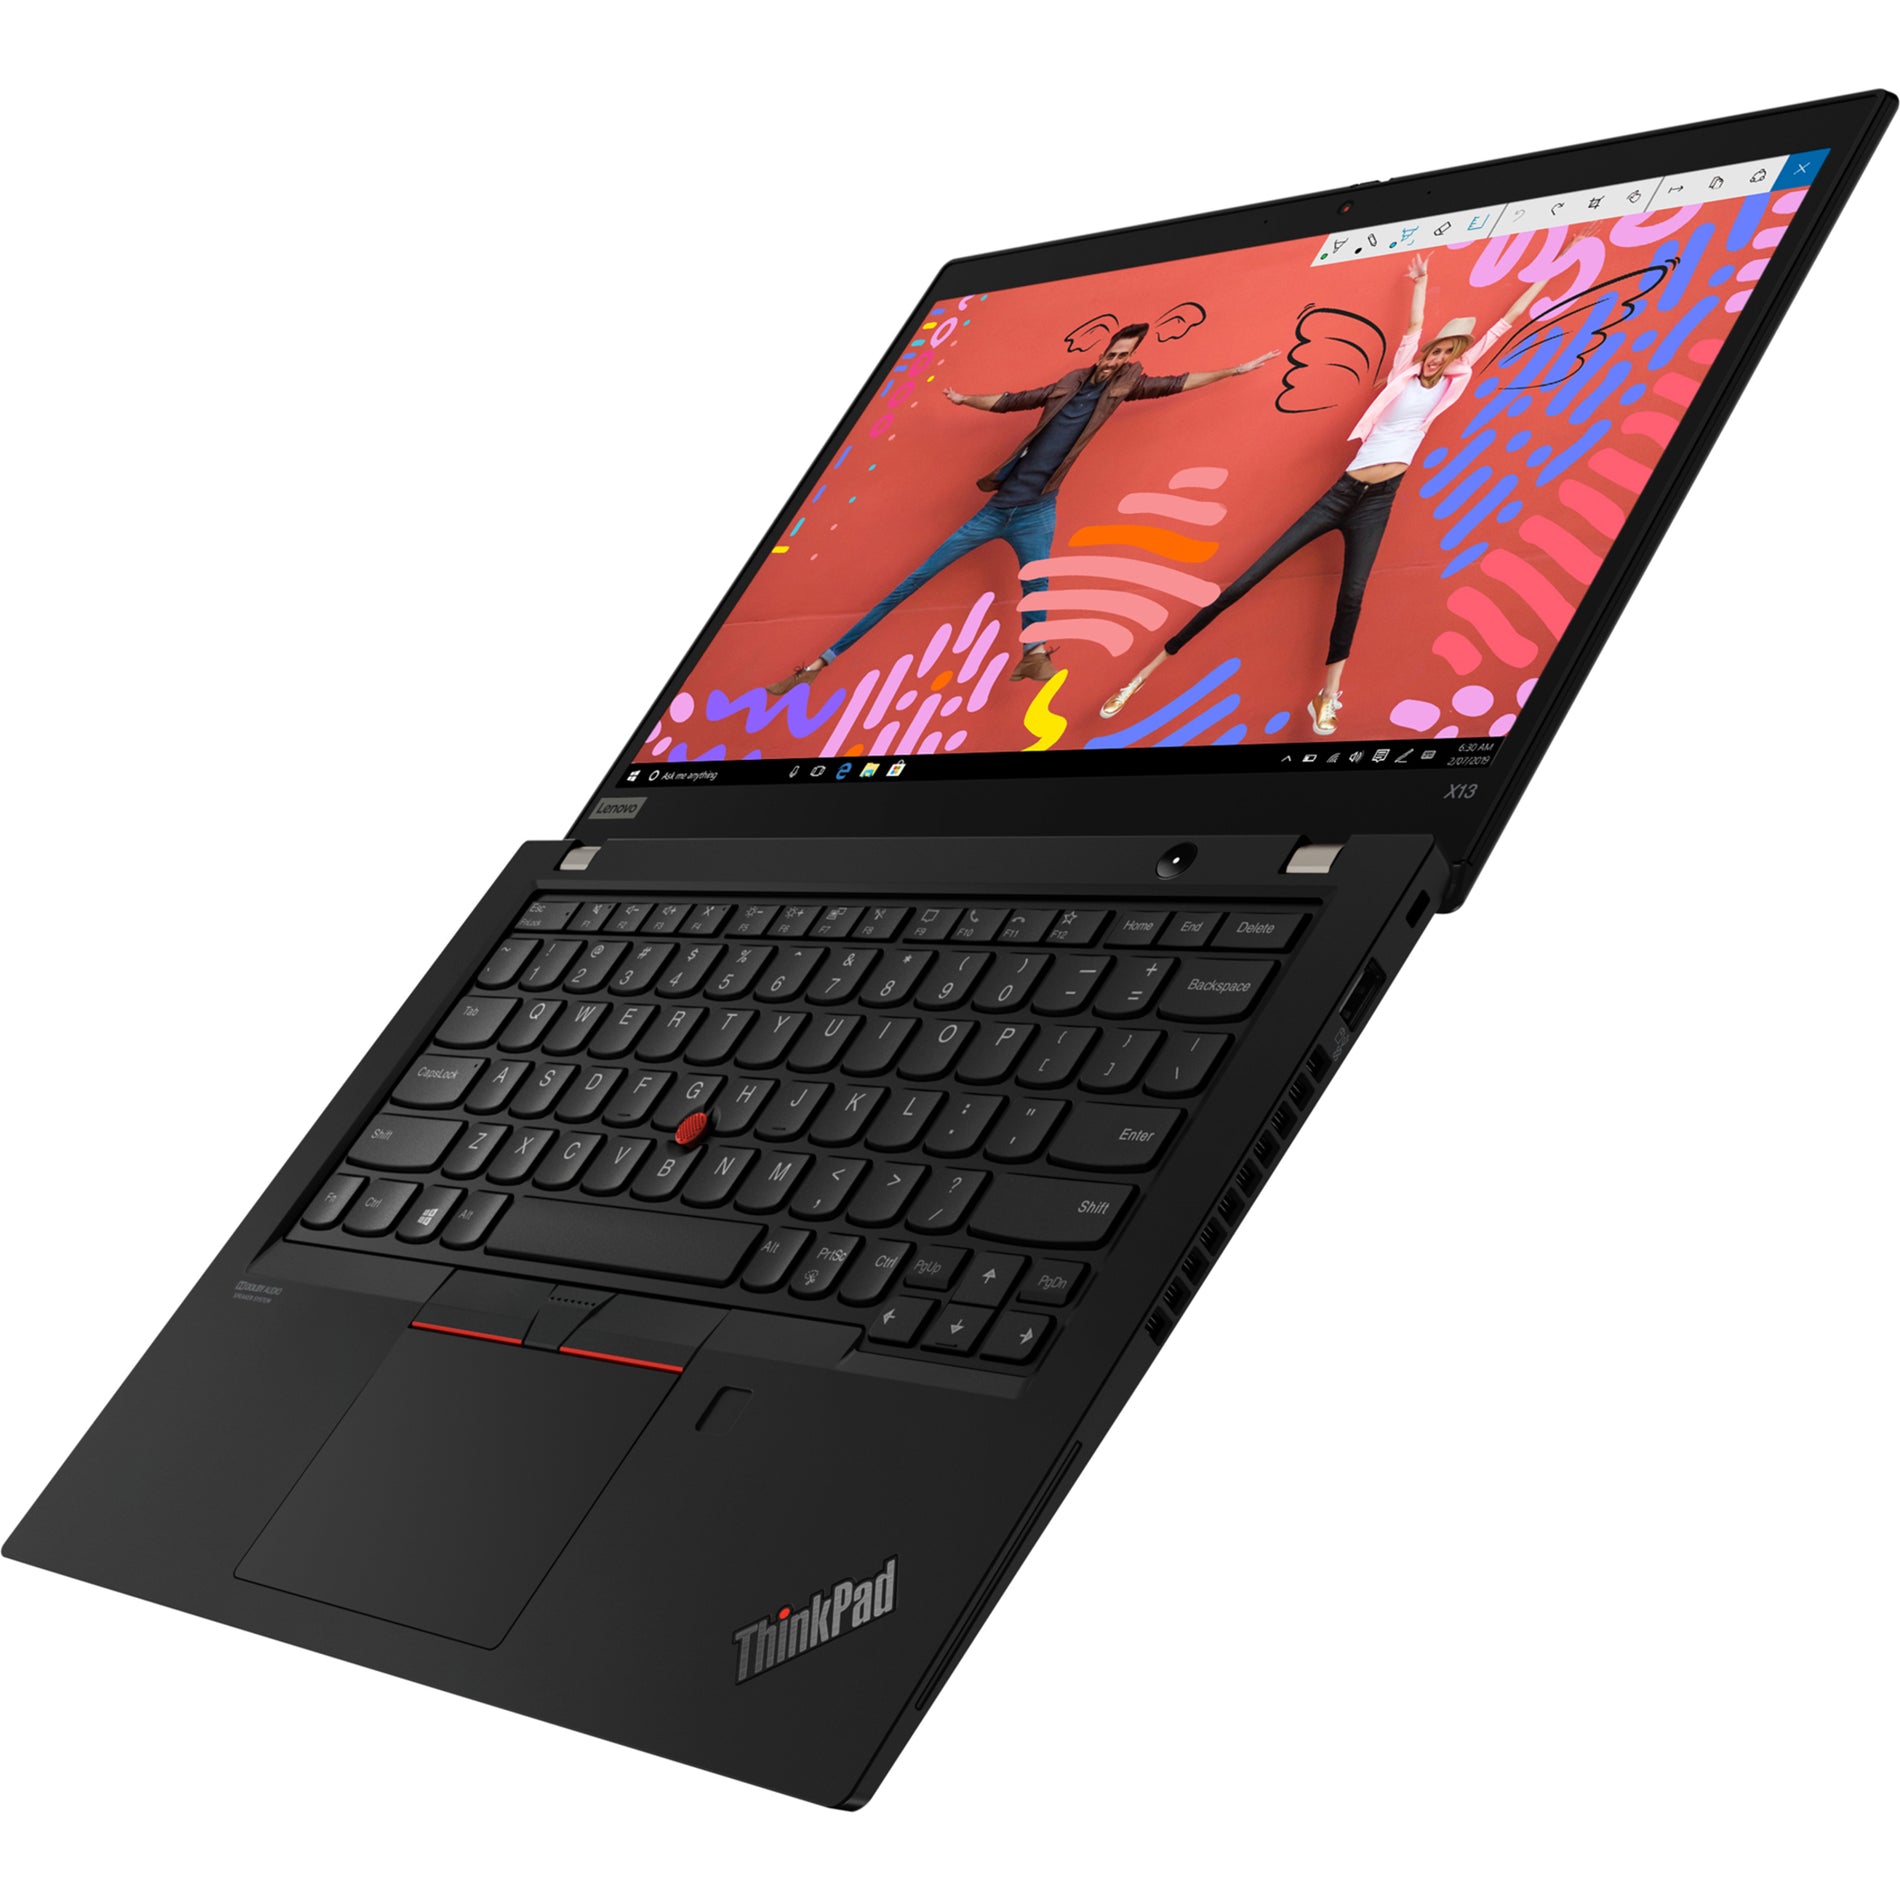 Lenovo 20T20021US ThinkPad X13 Gen 1 Notebook, Intel Core i5-10310U, 8GB RAM, 256GB SSD, Windows 10 Pro